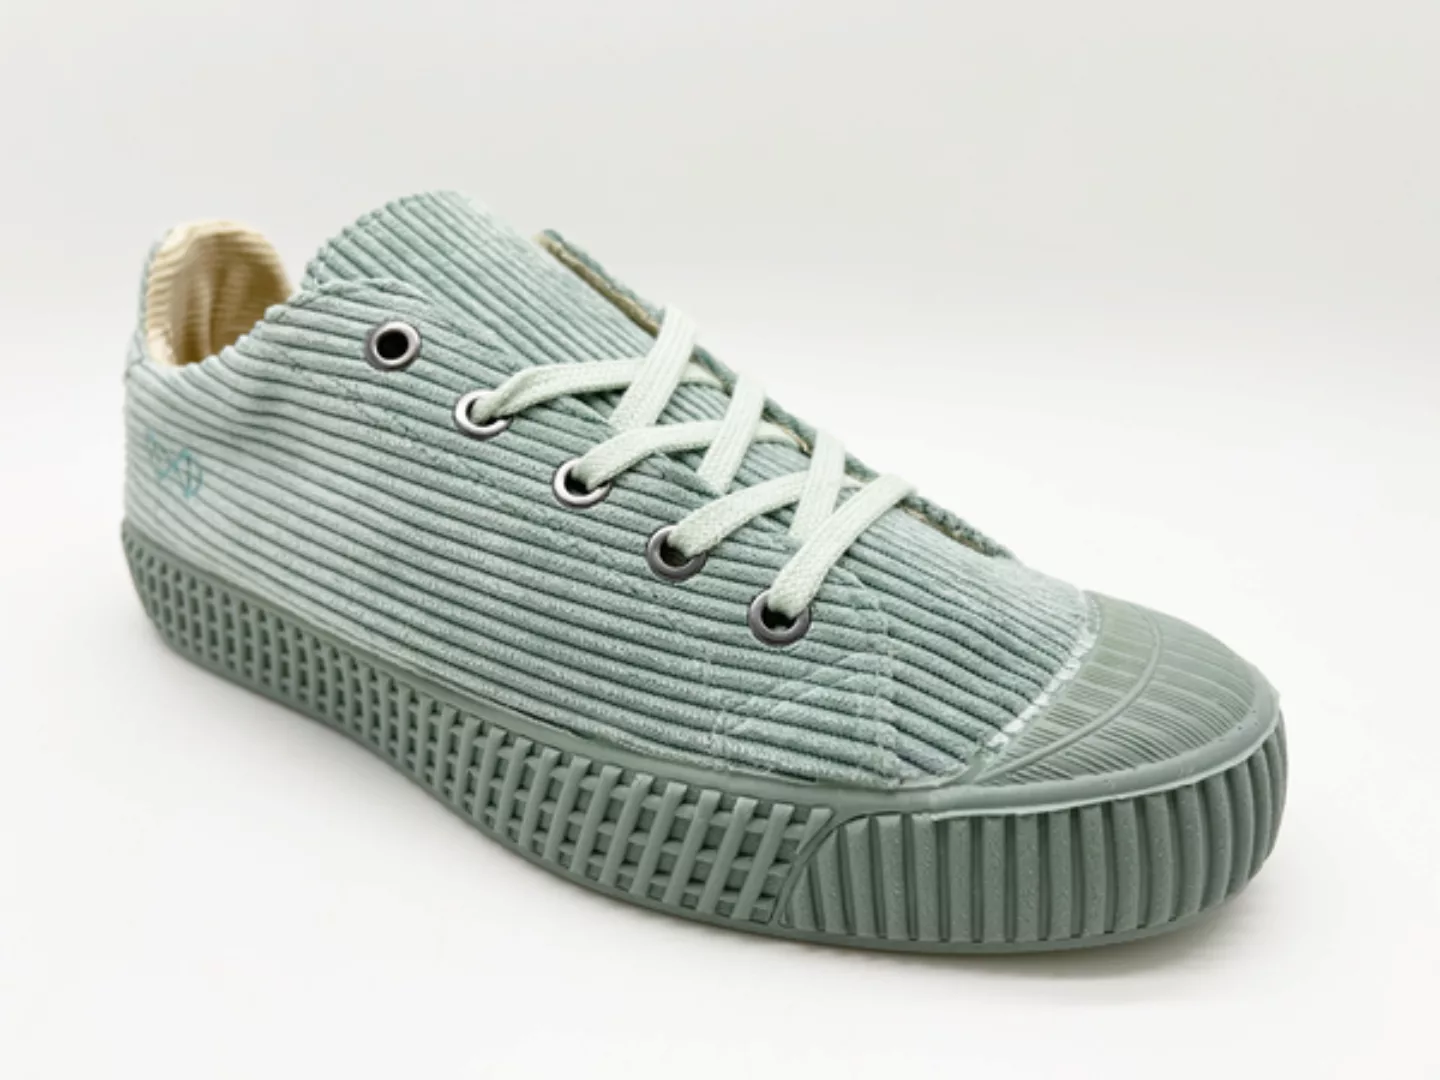 Veganer Sneaker "Nat-2 Cord Low" Aus Echtem Corduroy, Kork, Rec. Gummi Und günstig online kaufen